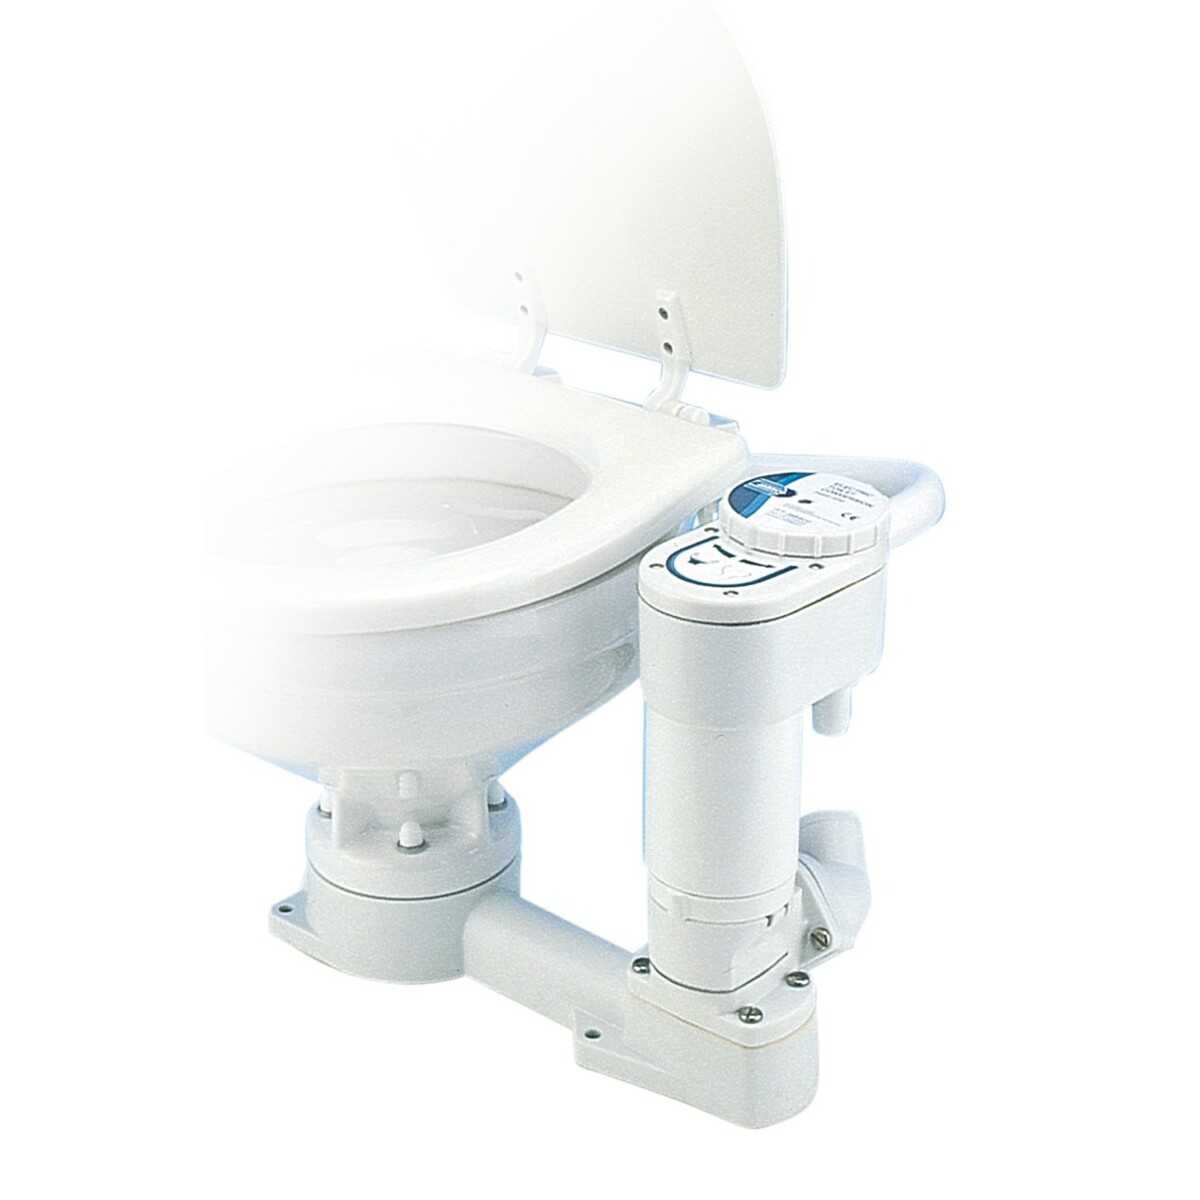 Umrüstsatz für Jabsco Toilette, manuell auf elektrisch